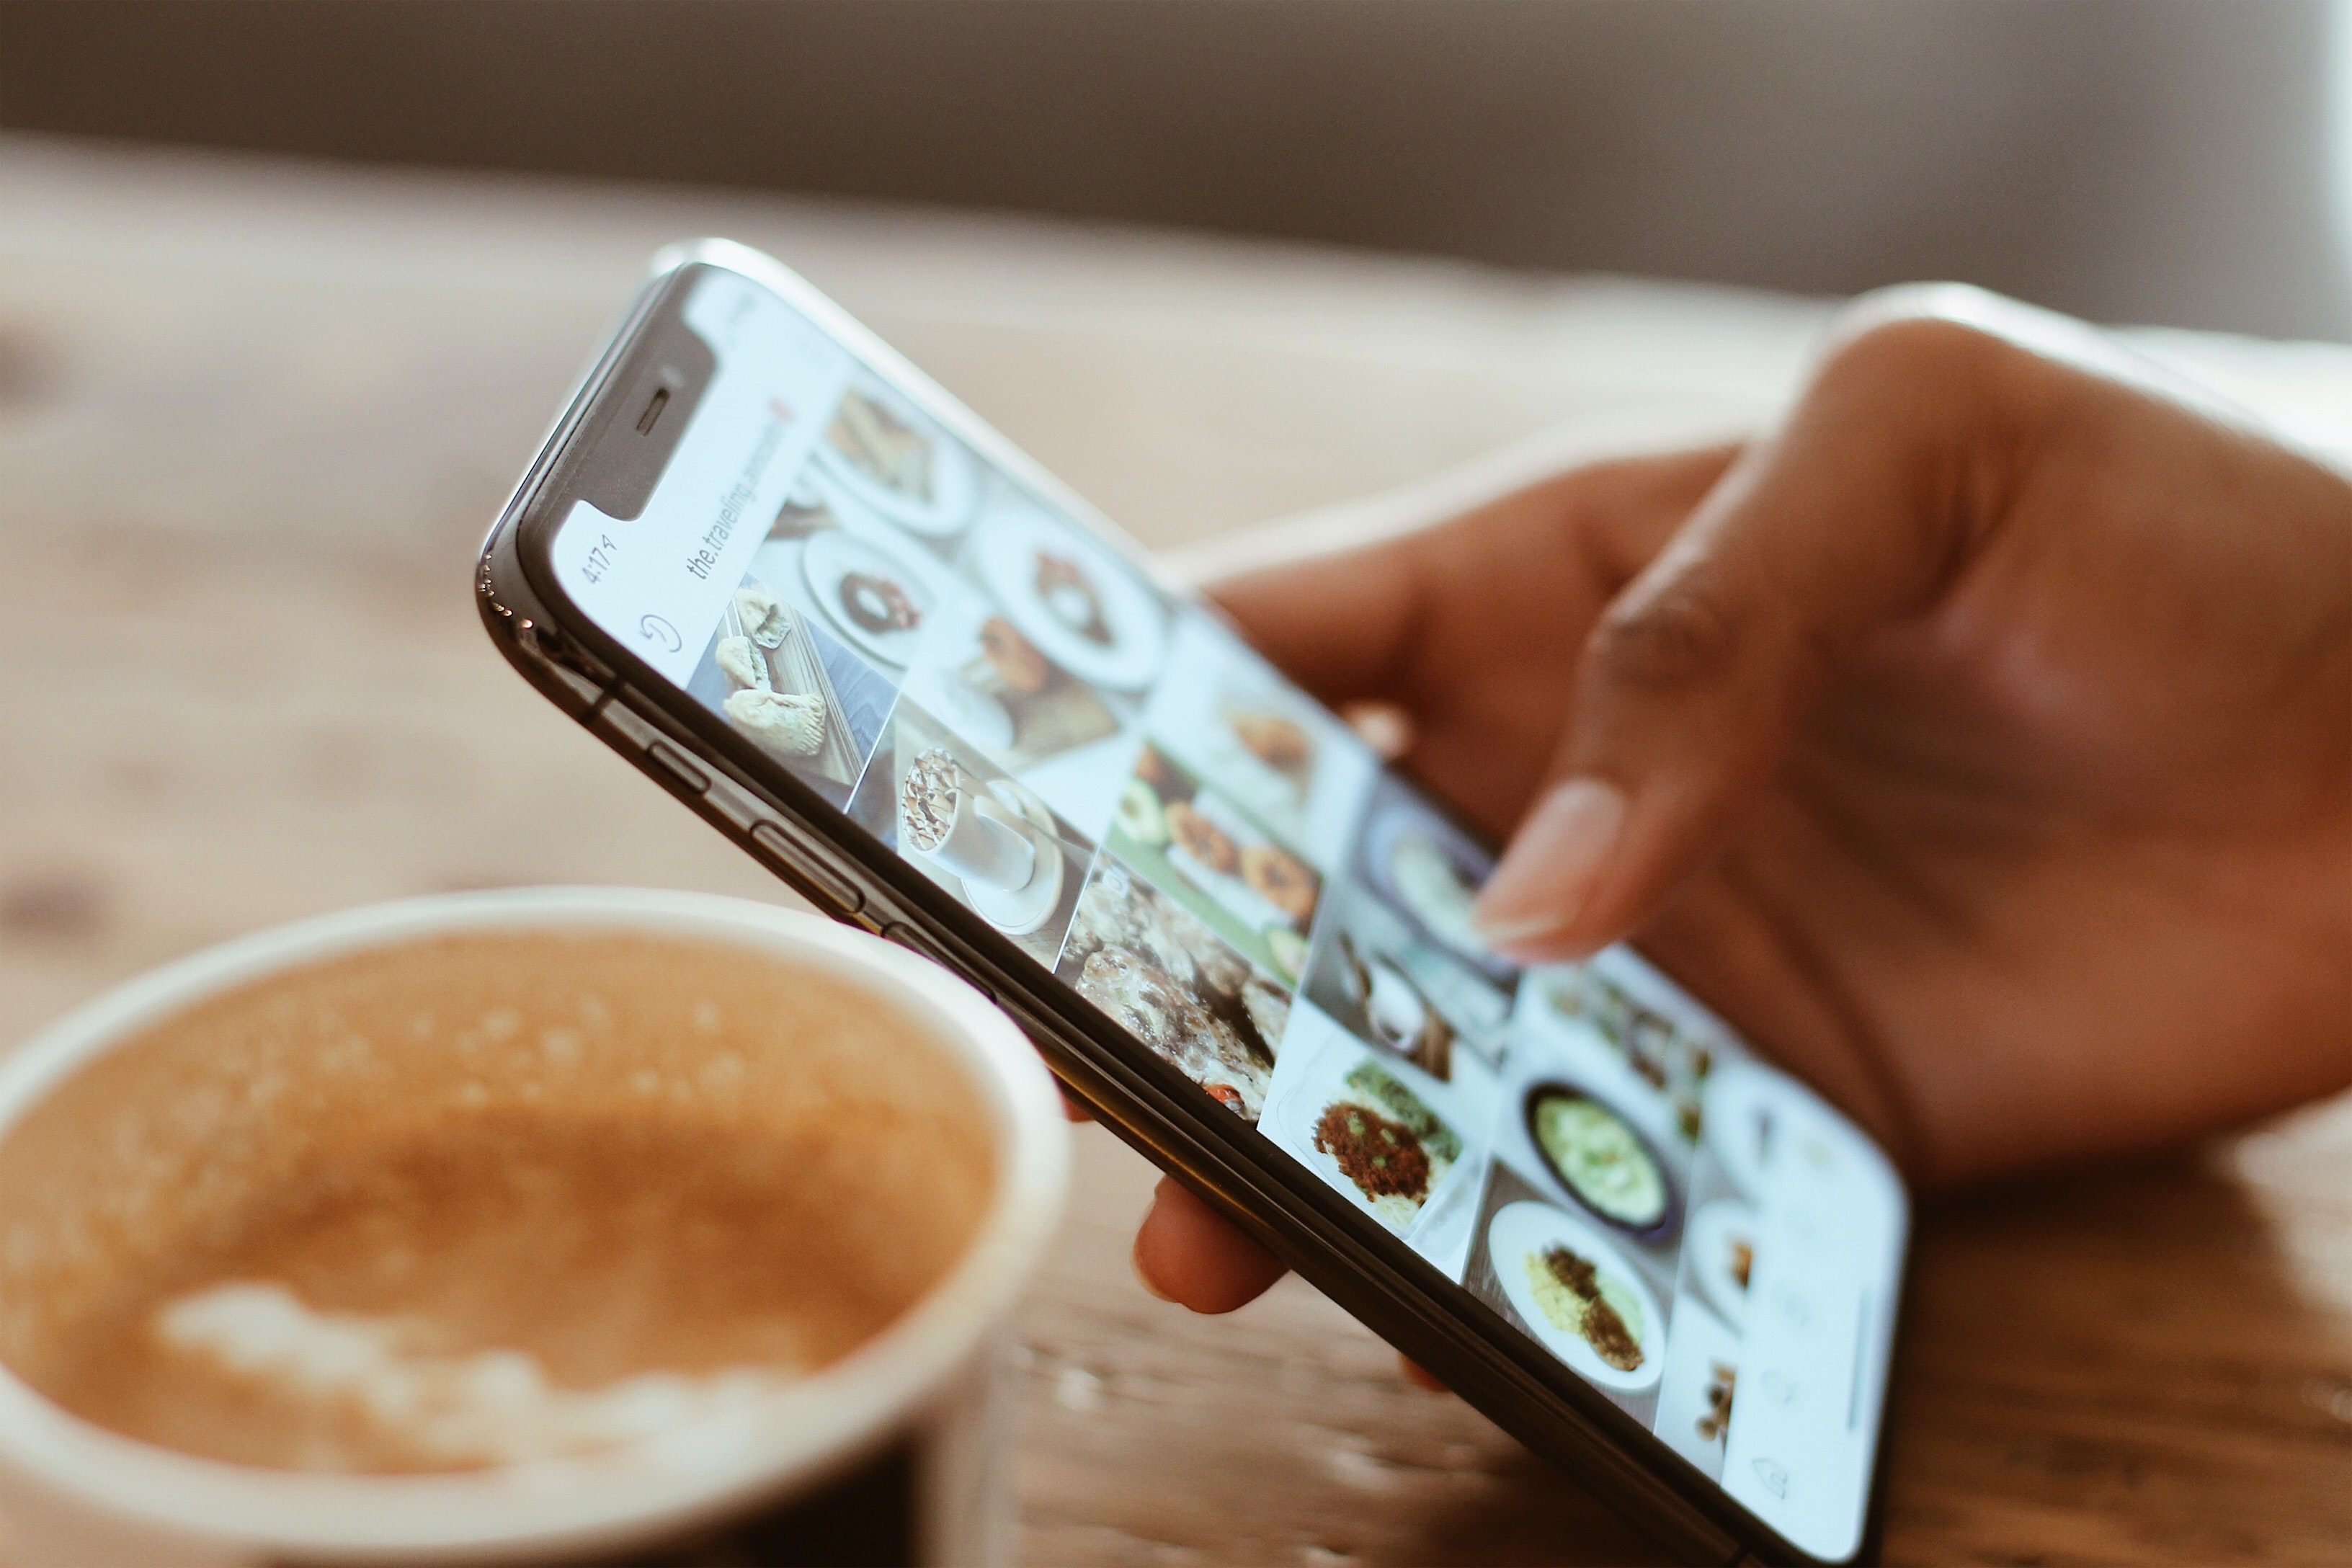 iPhone com Instagram aberto e fotos de comida/bebida